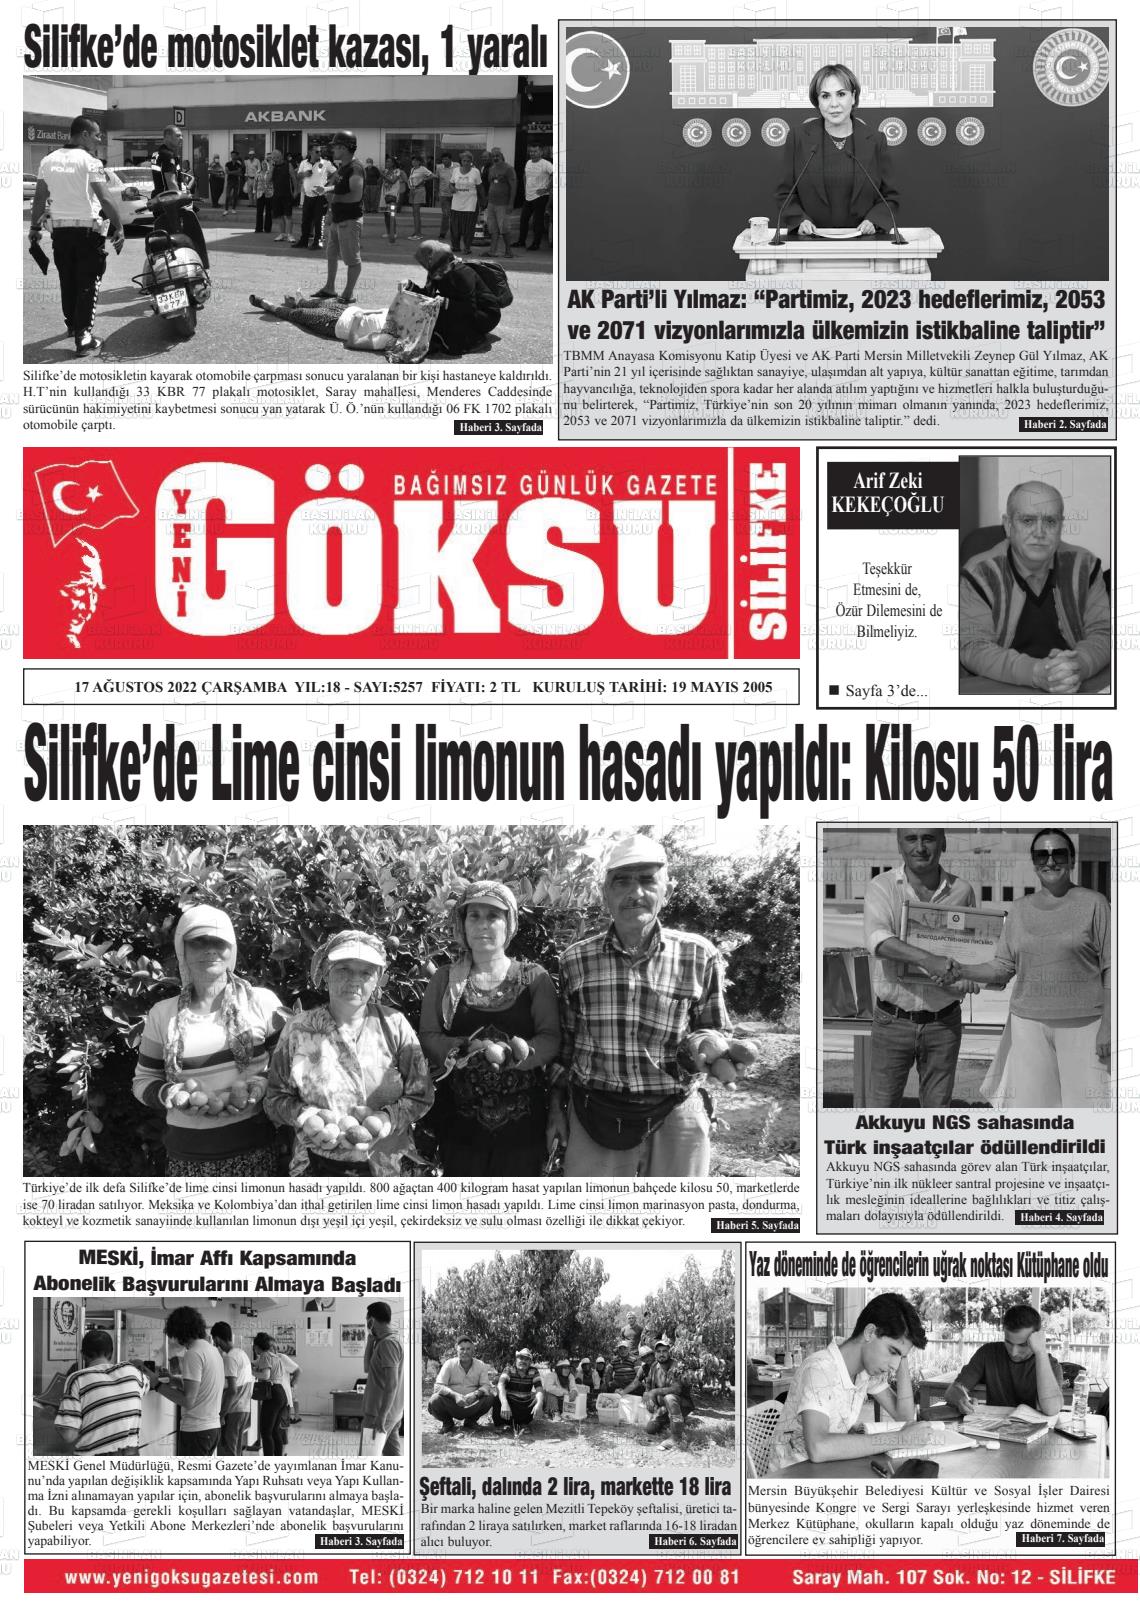 17 Ağustos 2022 YENİ GÖKSU GAZETESİ Gazete Manşeti